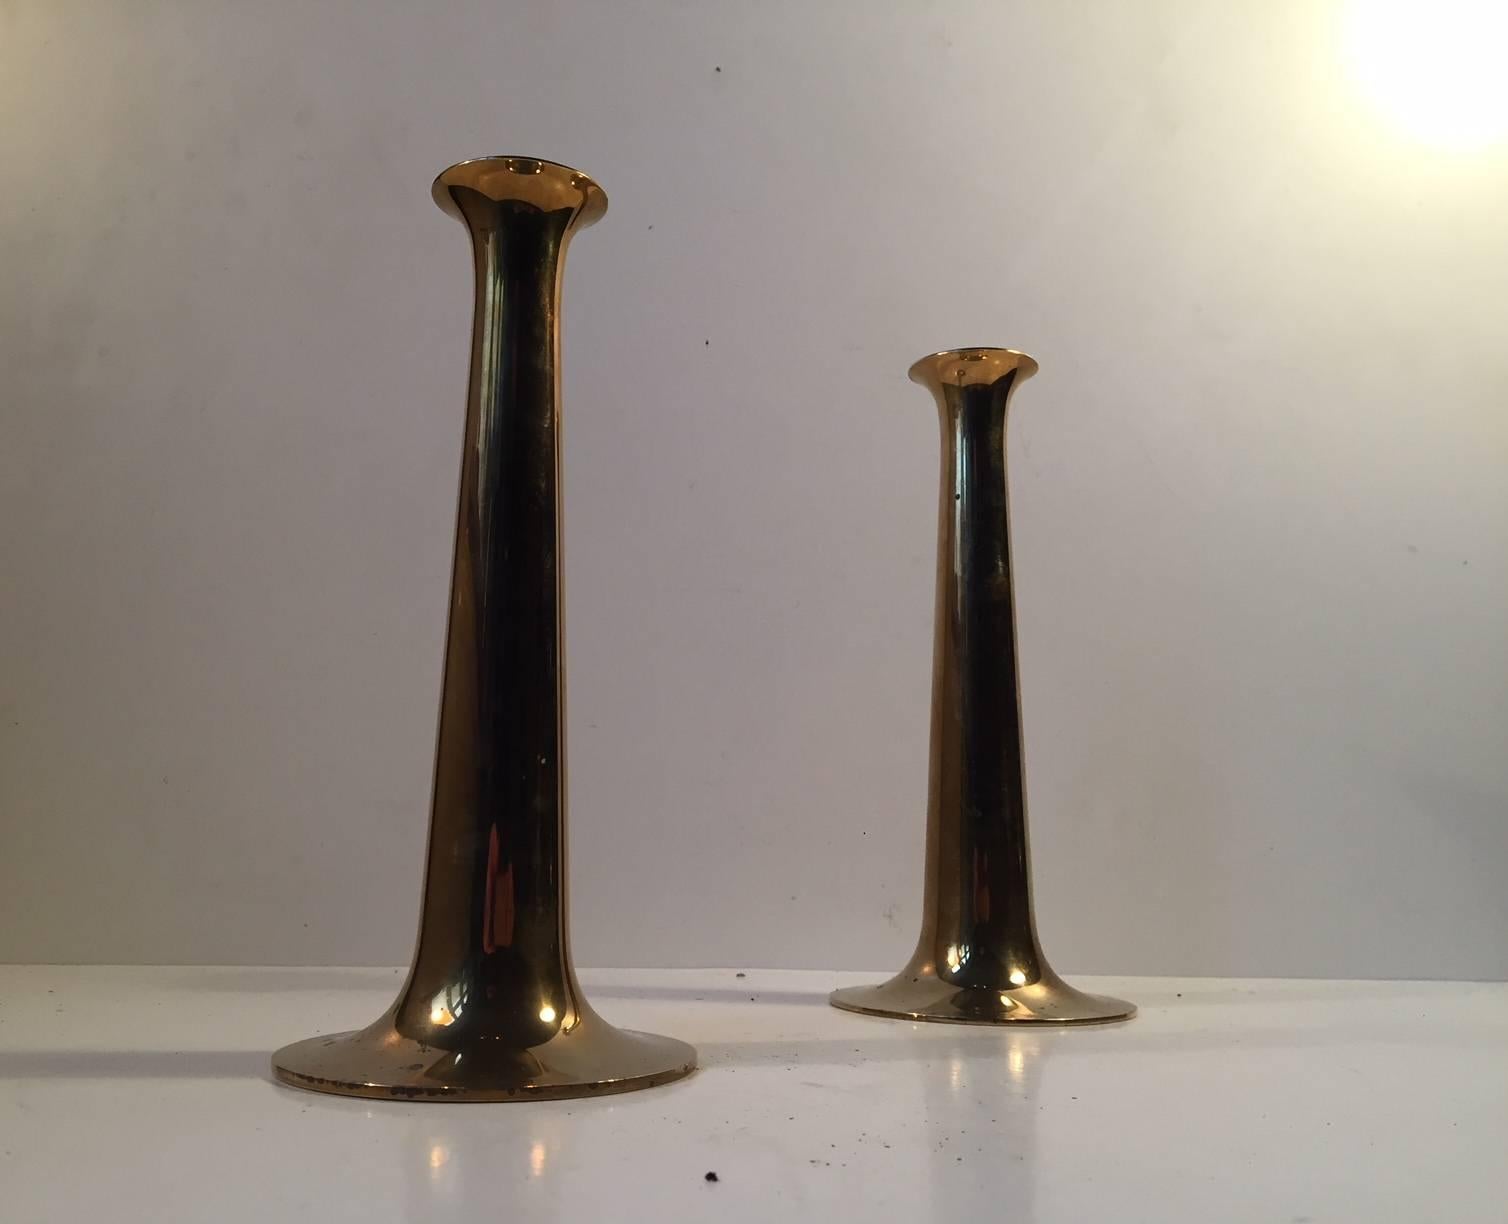 Cette paire de chandeliers a été conçue par Hans Bolling et fabriquée par Torben Ørskov au Danemark dans les années 1960. Ils sont fabriqués en laiton massif et portent la marque du fabricant sur chaque base.